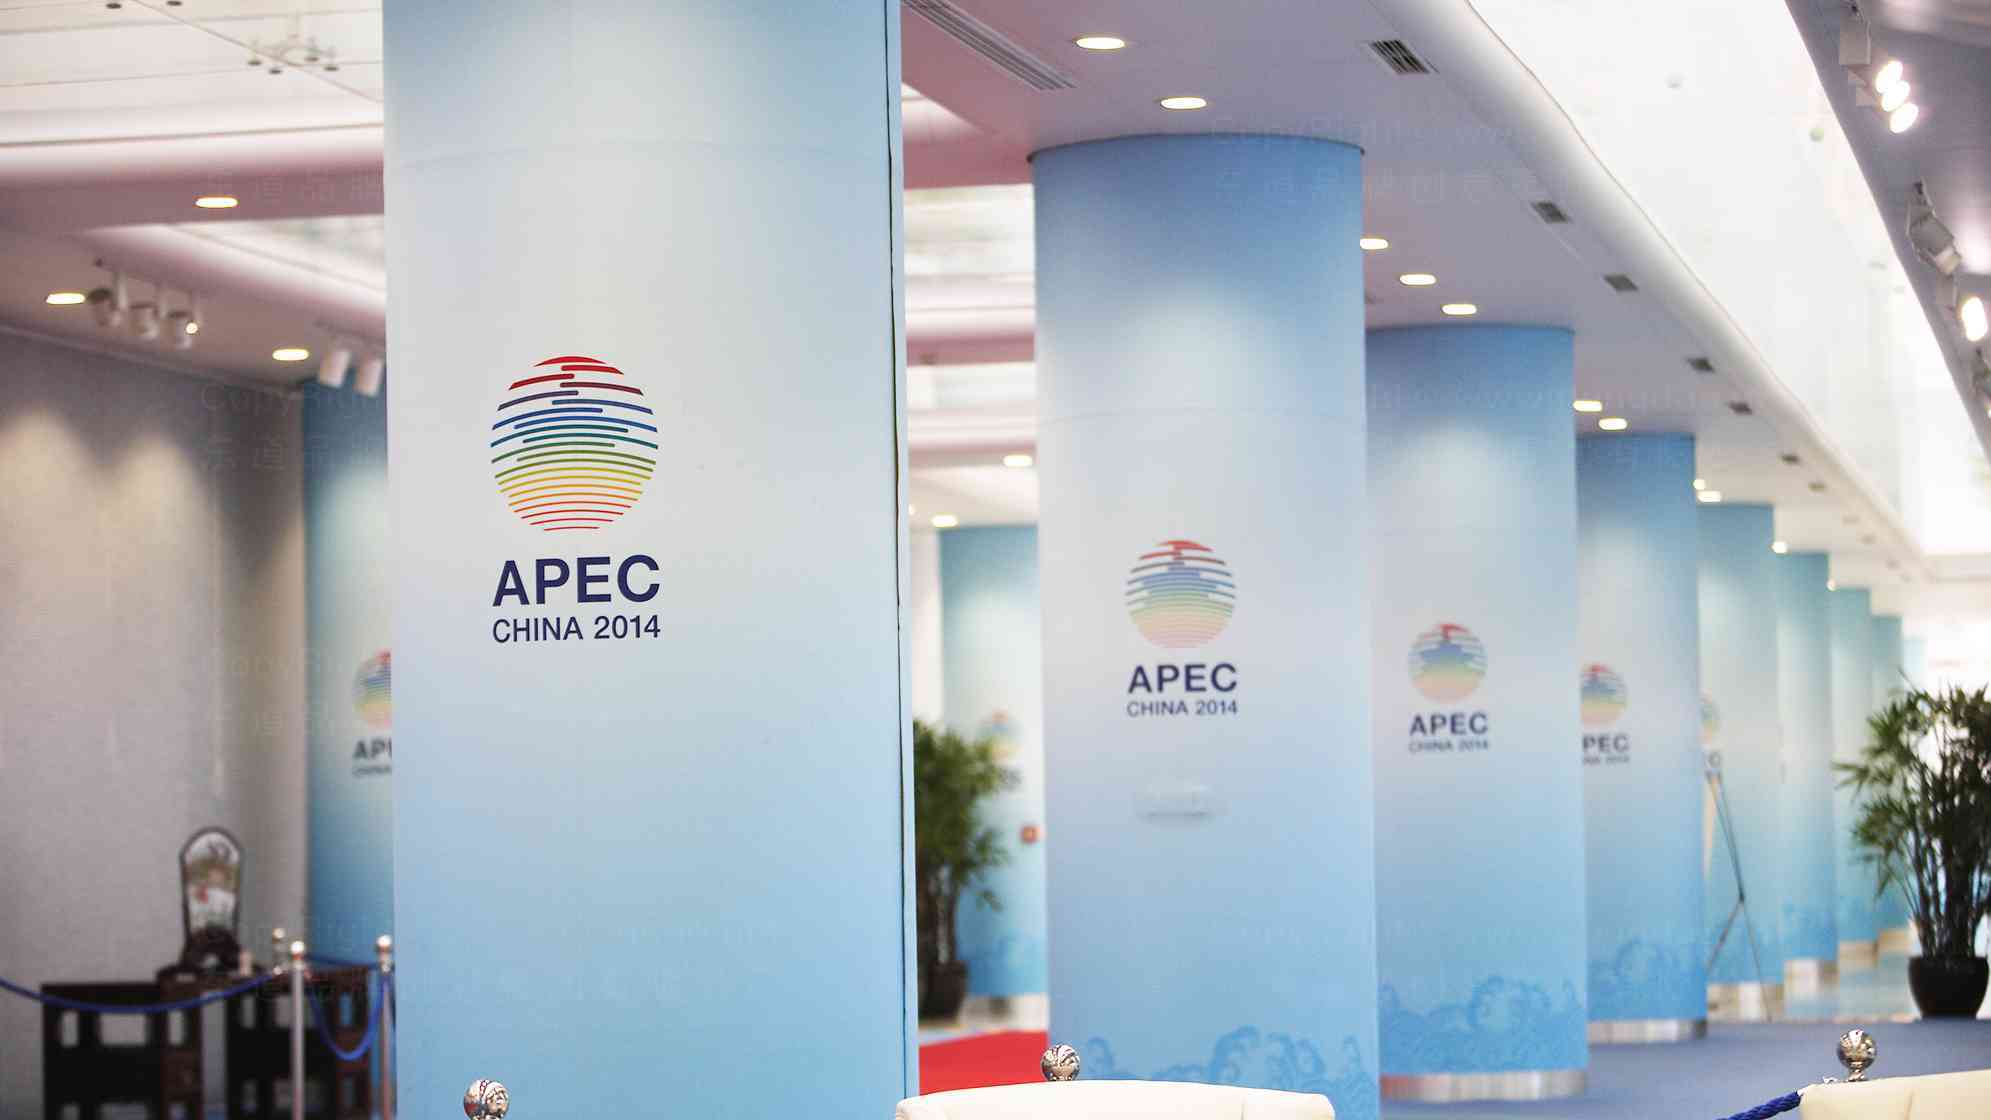 APEC China 2014會議vi設計圖片素材_4